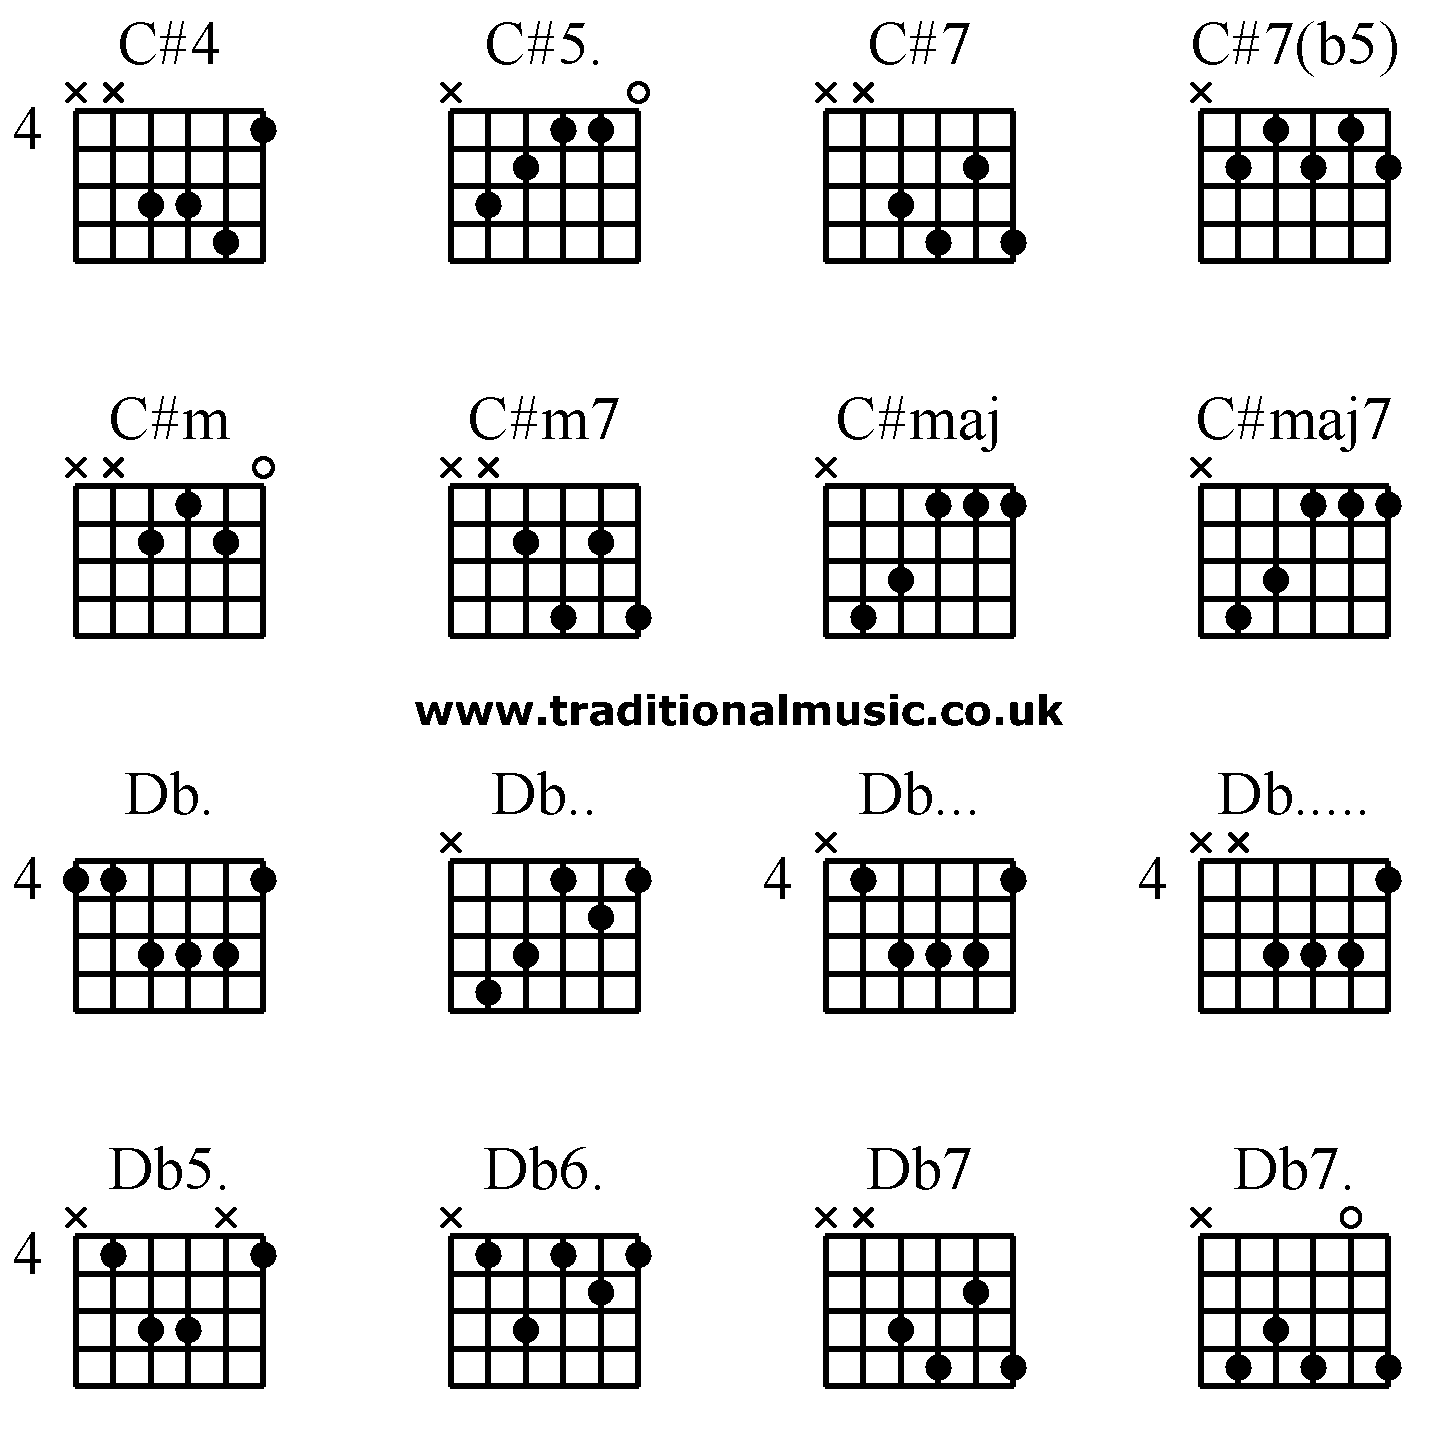 Advanced guitar chords: C#4 C#5. C#7 C#7(b5), C#m C#m7 C#maj C#maj7, Db. Db.. Db... Db....., Db5. Db6. Db7 Db7.